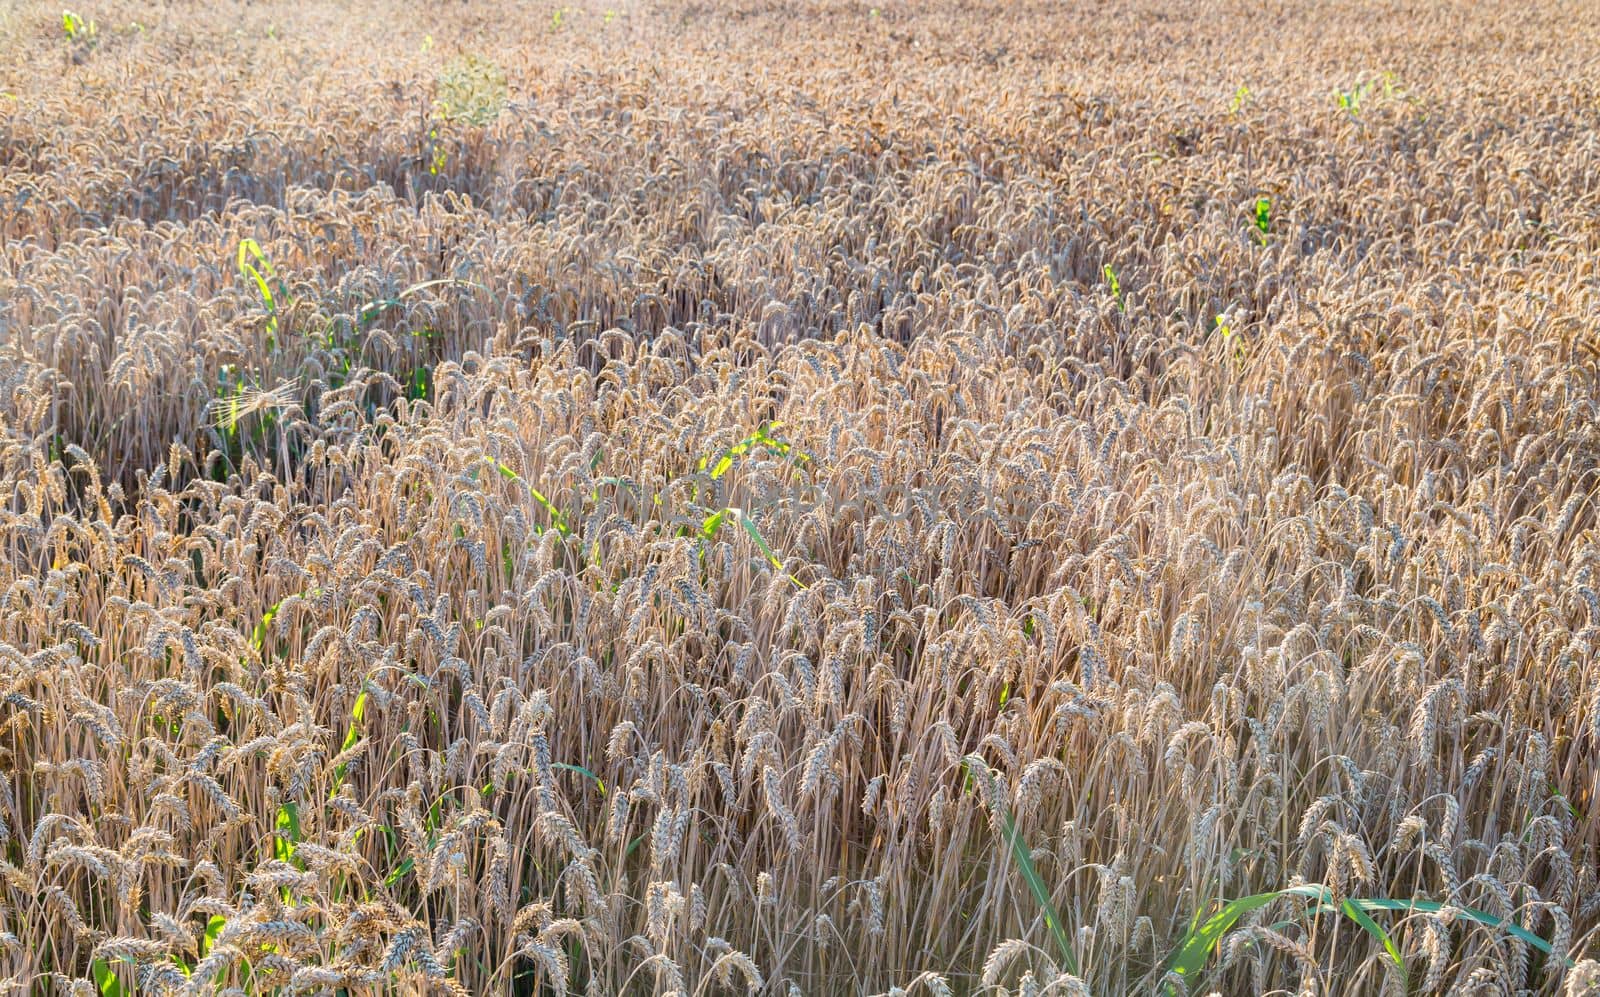 Background of ripening ears of meadow wheat field by Ciorba